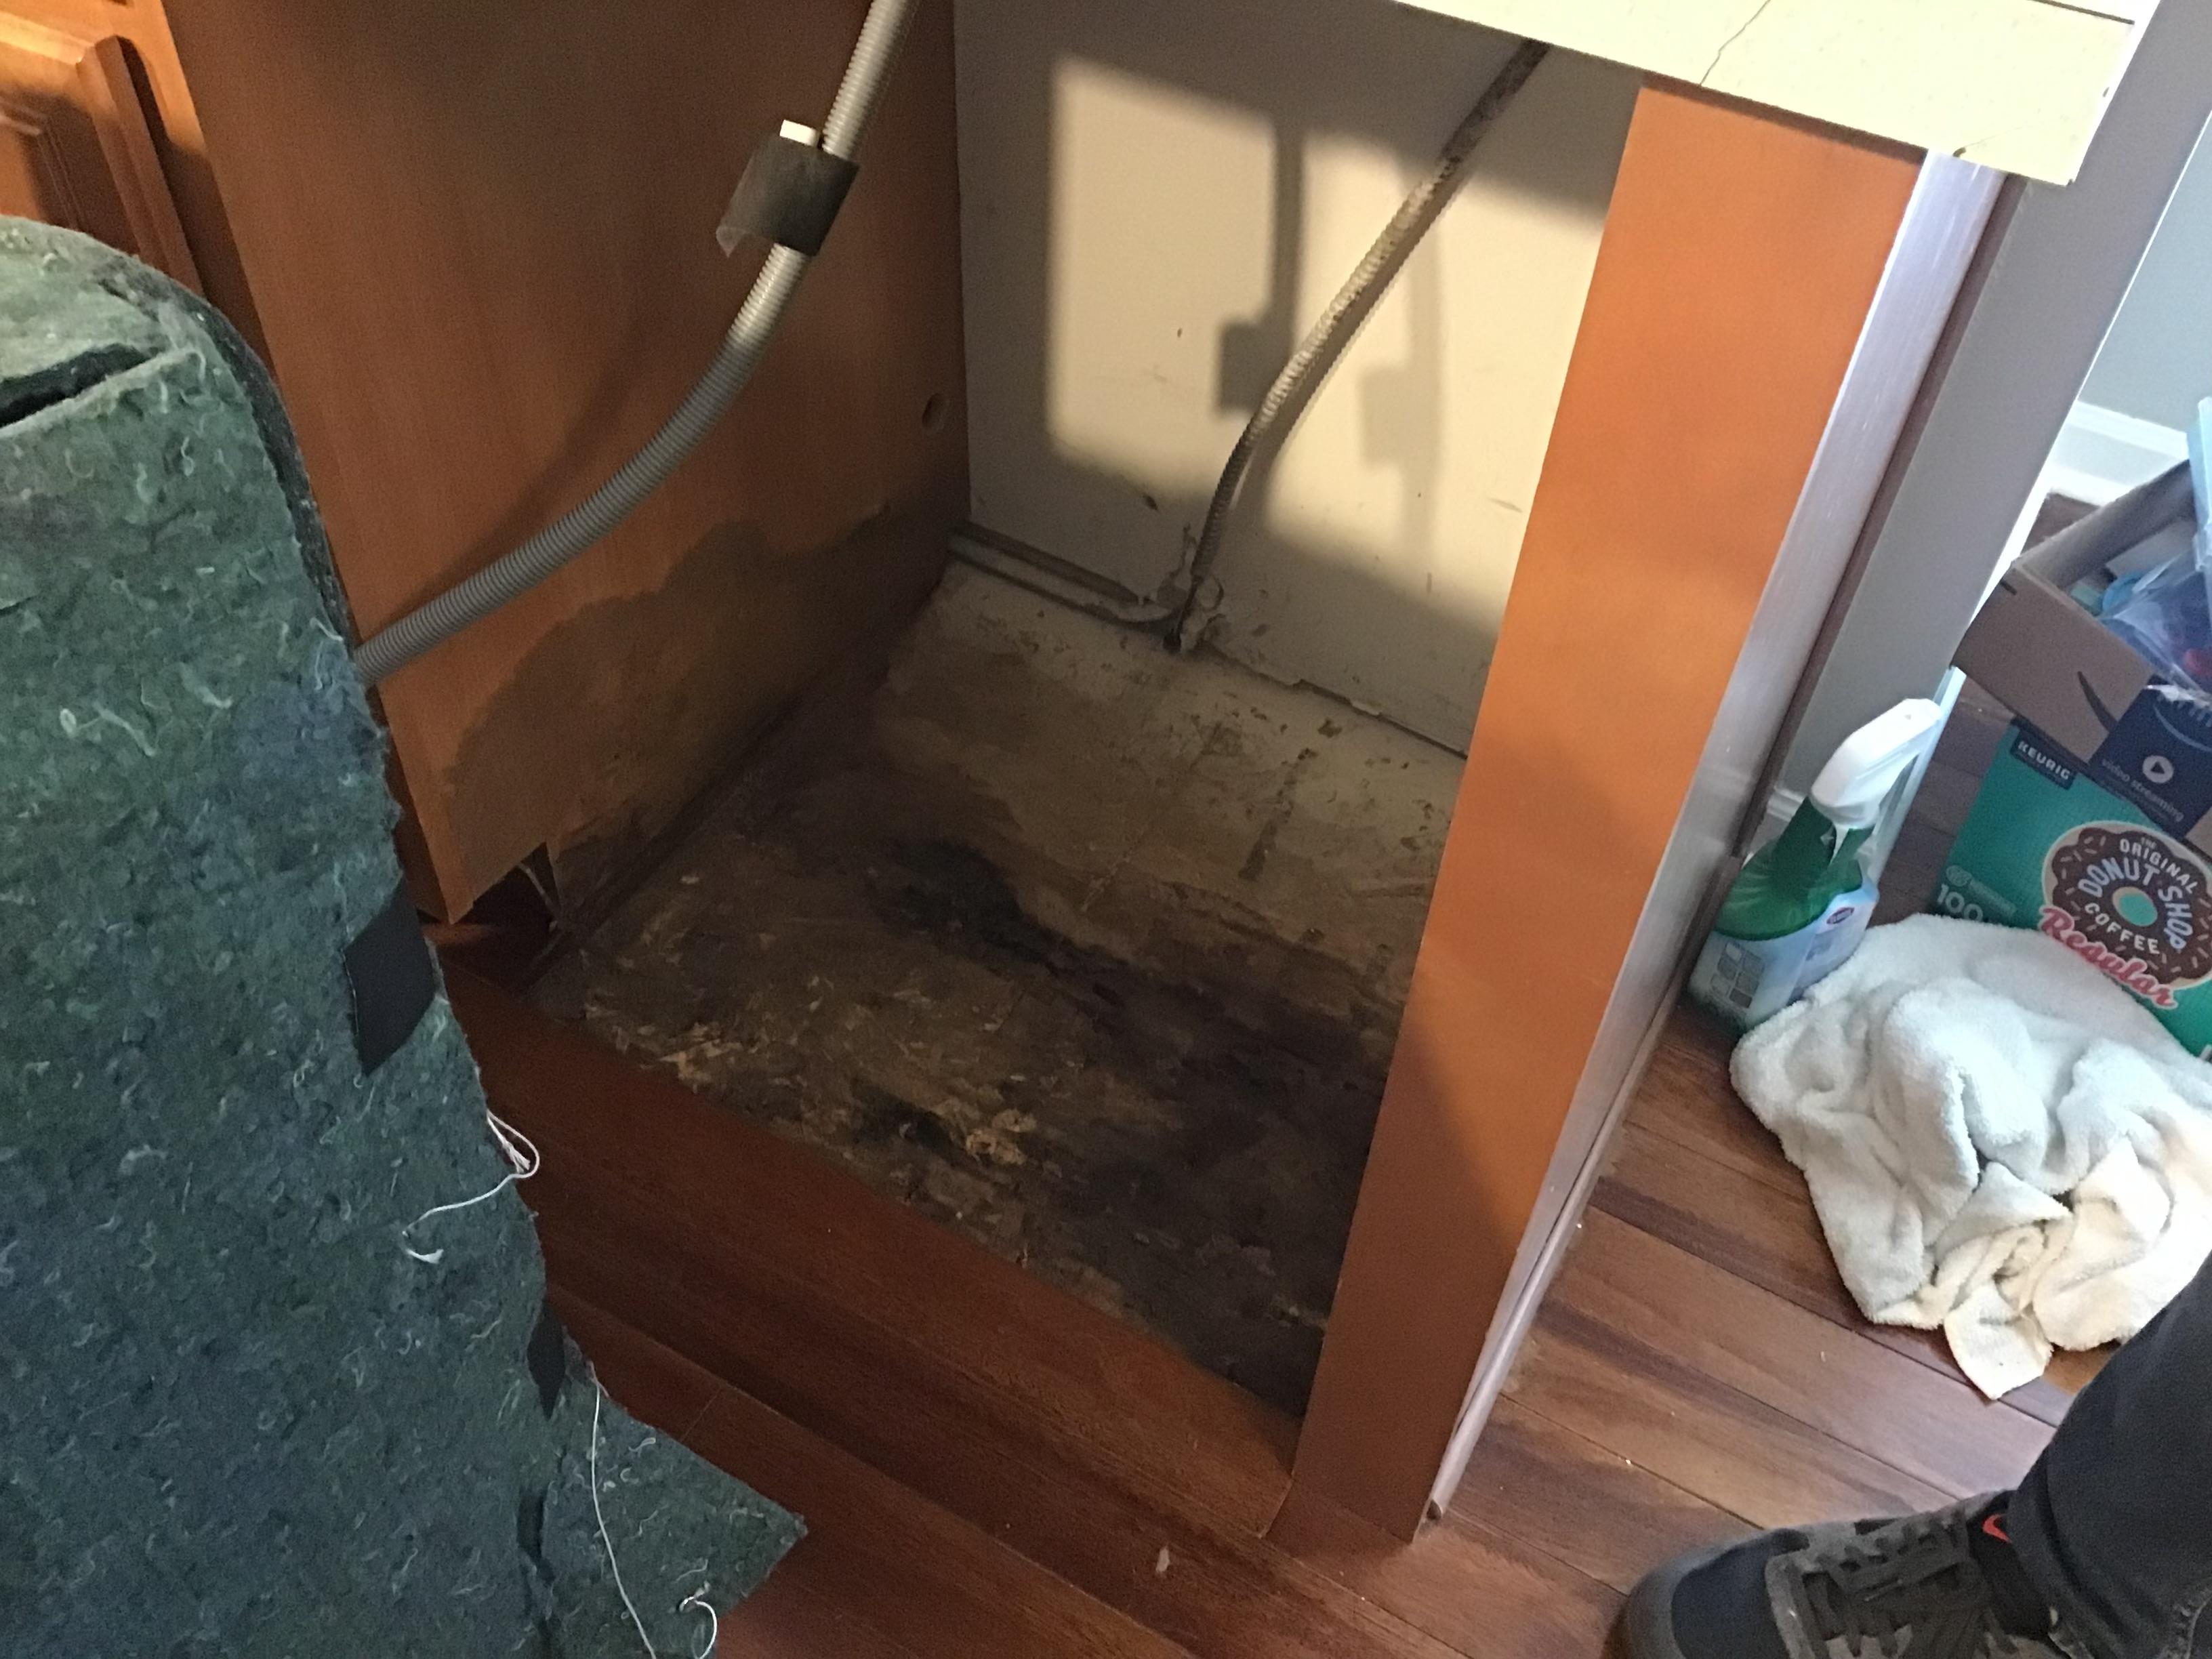 Dishwasher leak in the kitchen. SERVPRO of Evanston Evanston (847)763-7010